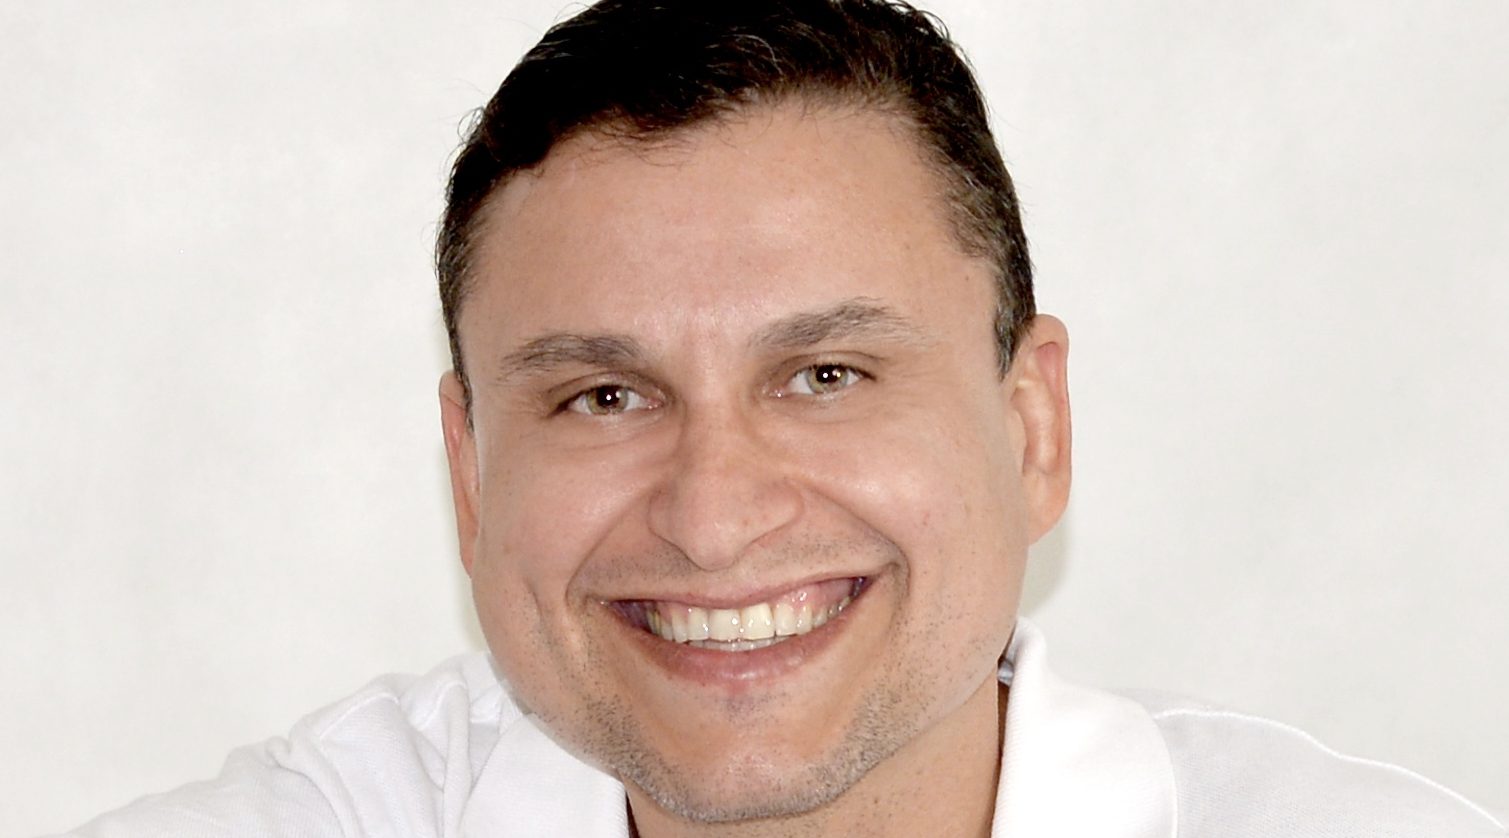 Ricardo Amaral - Head of Digital Banking LACA, Head of Brazil Business - Western  Union